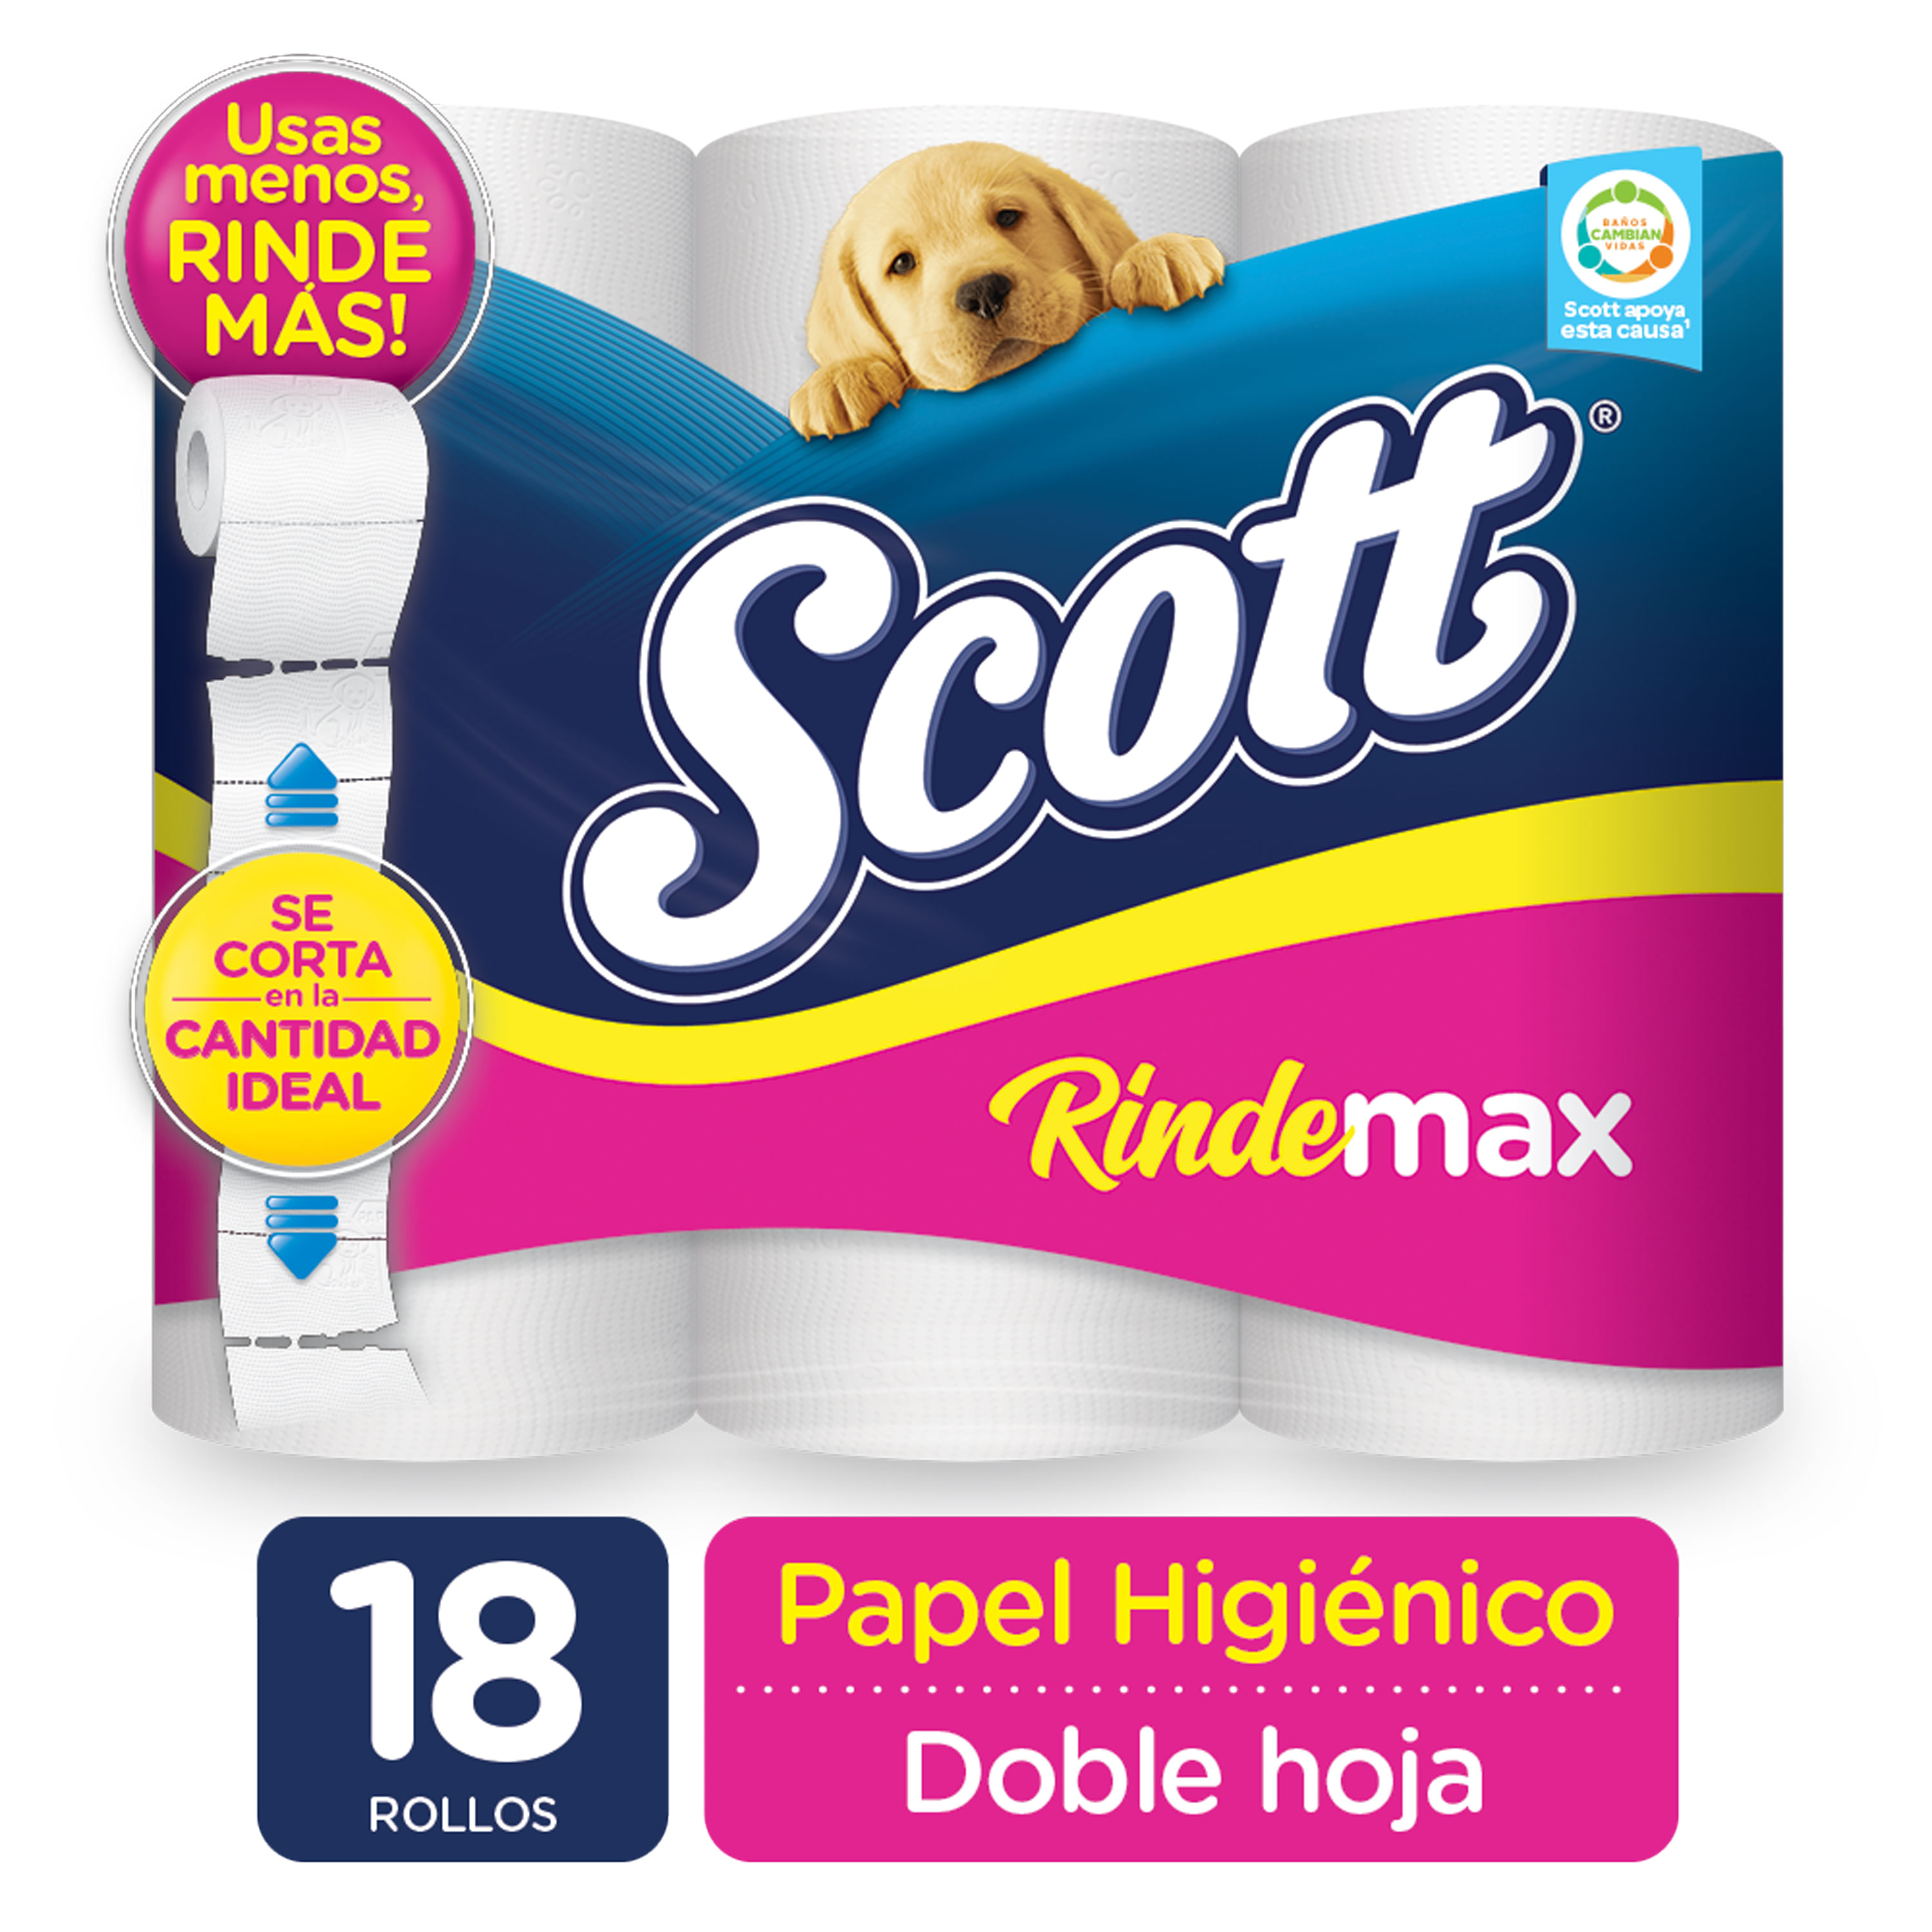 ▷ Chollo Pack x48 Rollos Papel higiénico Scottex Megarollo por sólo 23,97€  con envío gratis ¡Sólo 0,50€ por rollo!